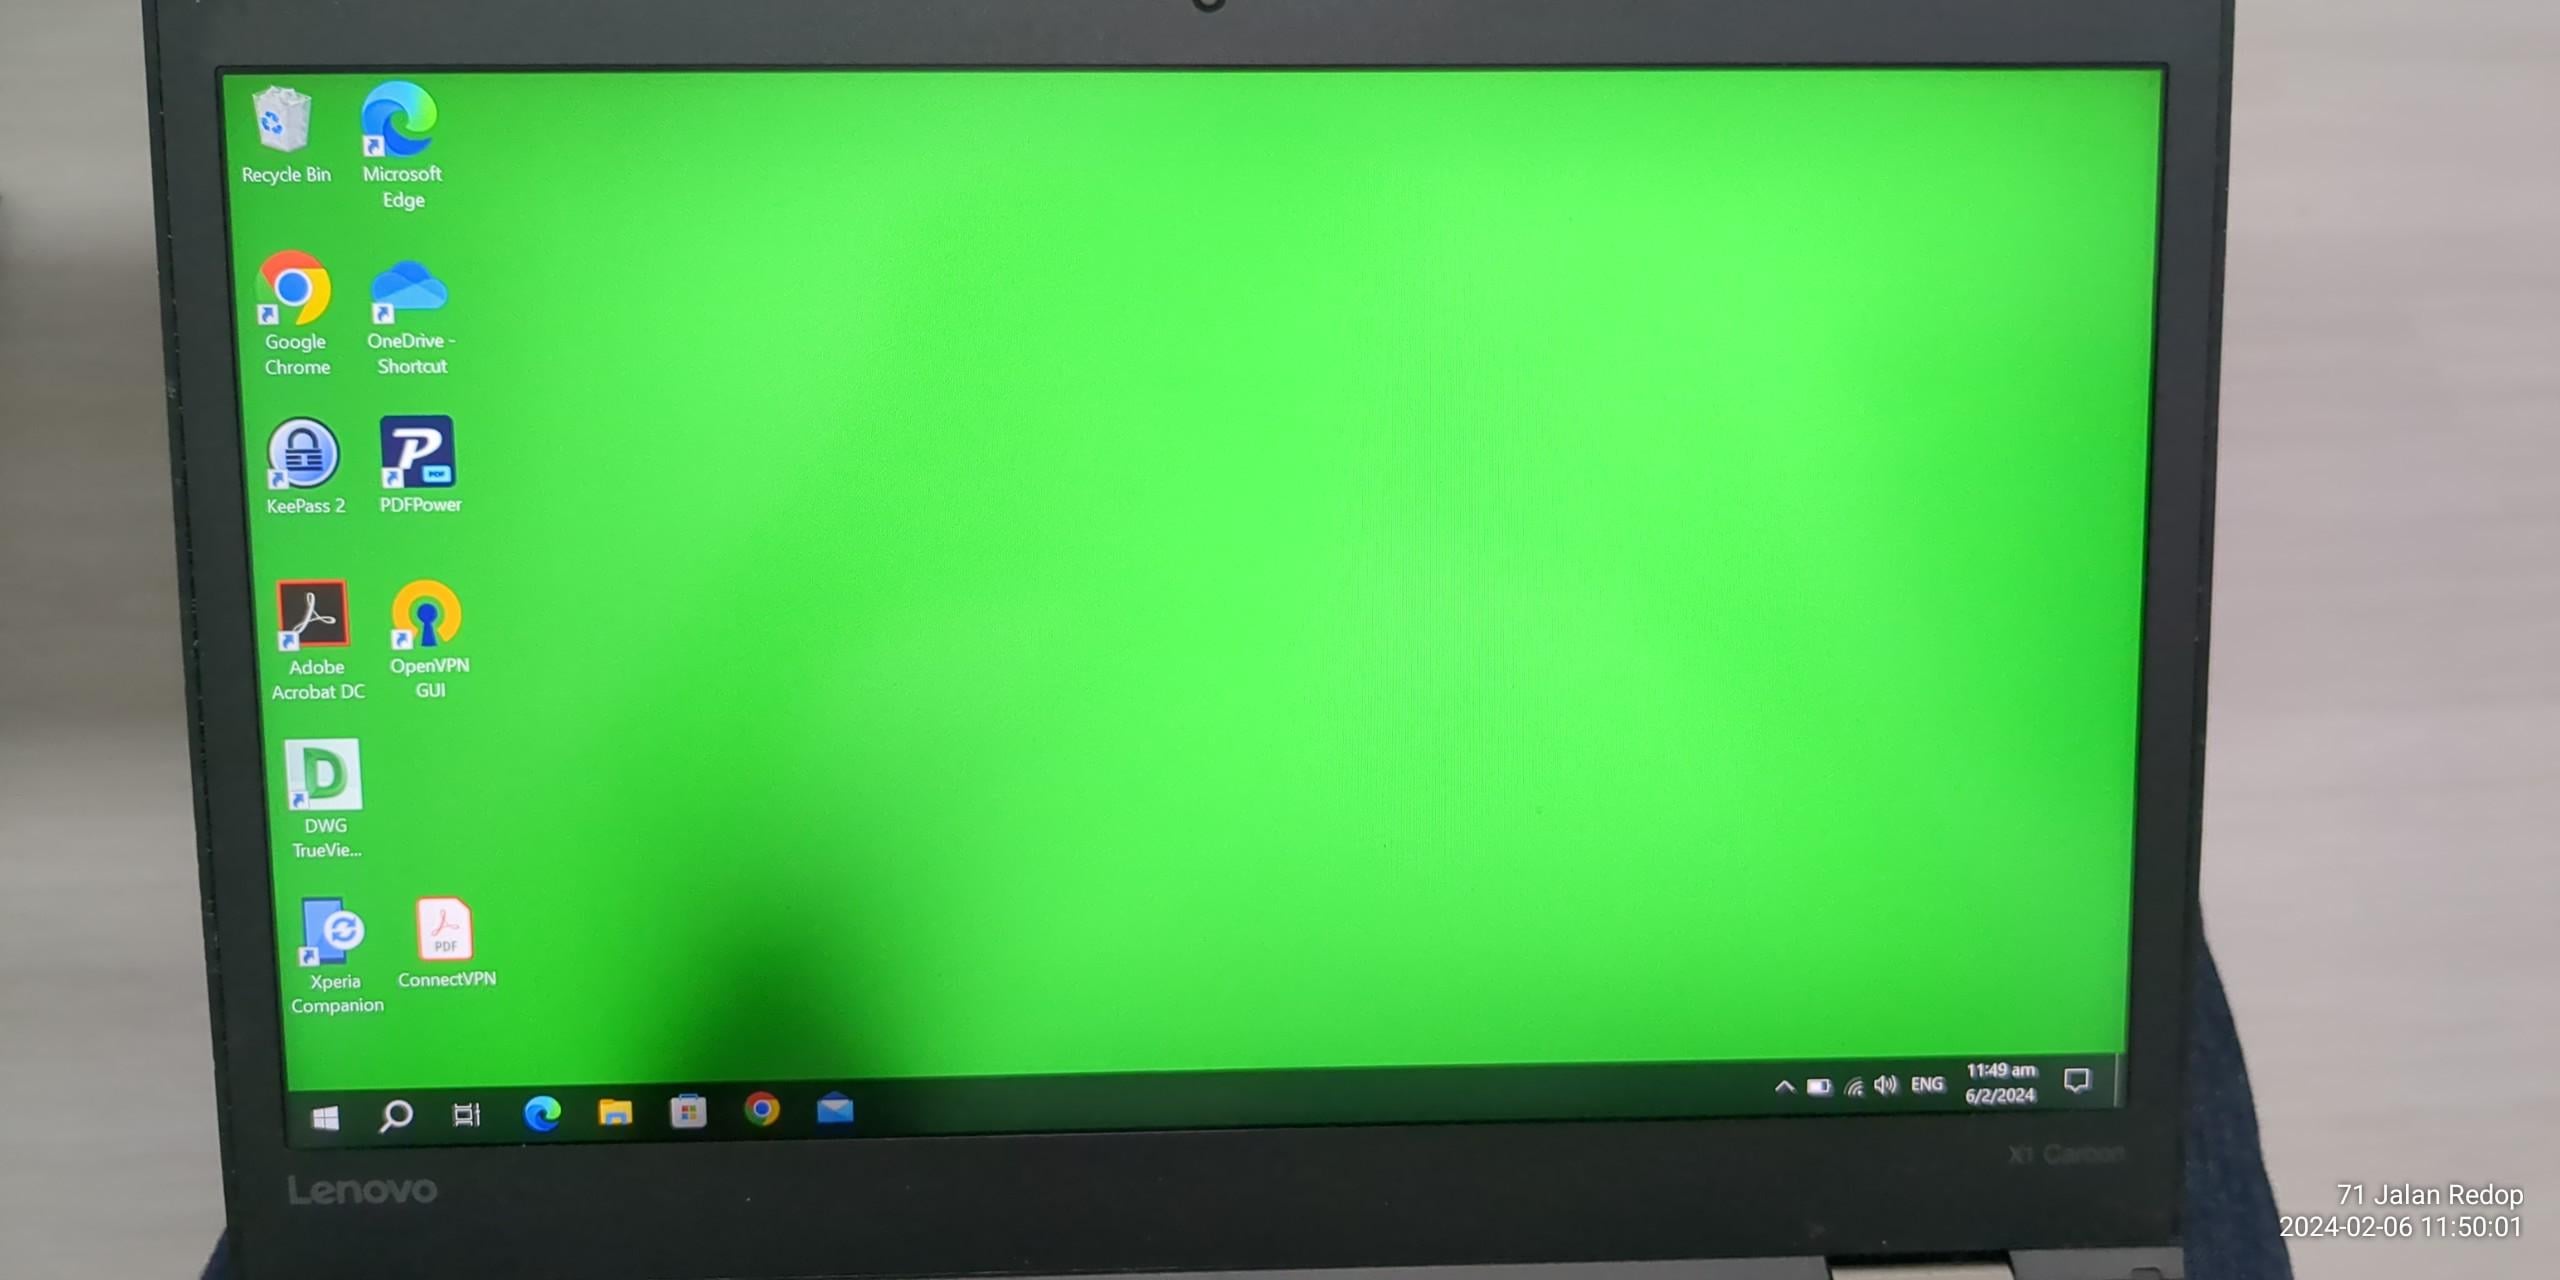 Wie löse ich das Problem mit dem schwarzen Fleck auf dem Bildschirm?